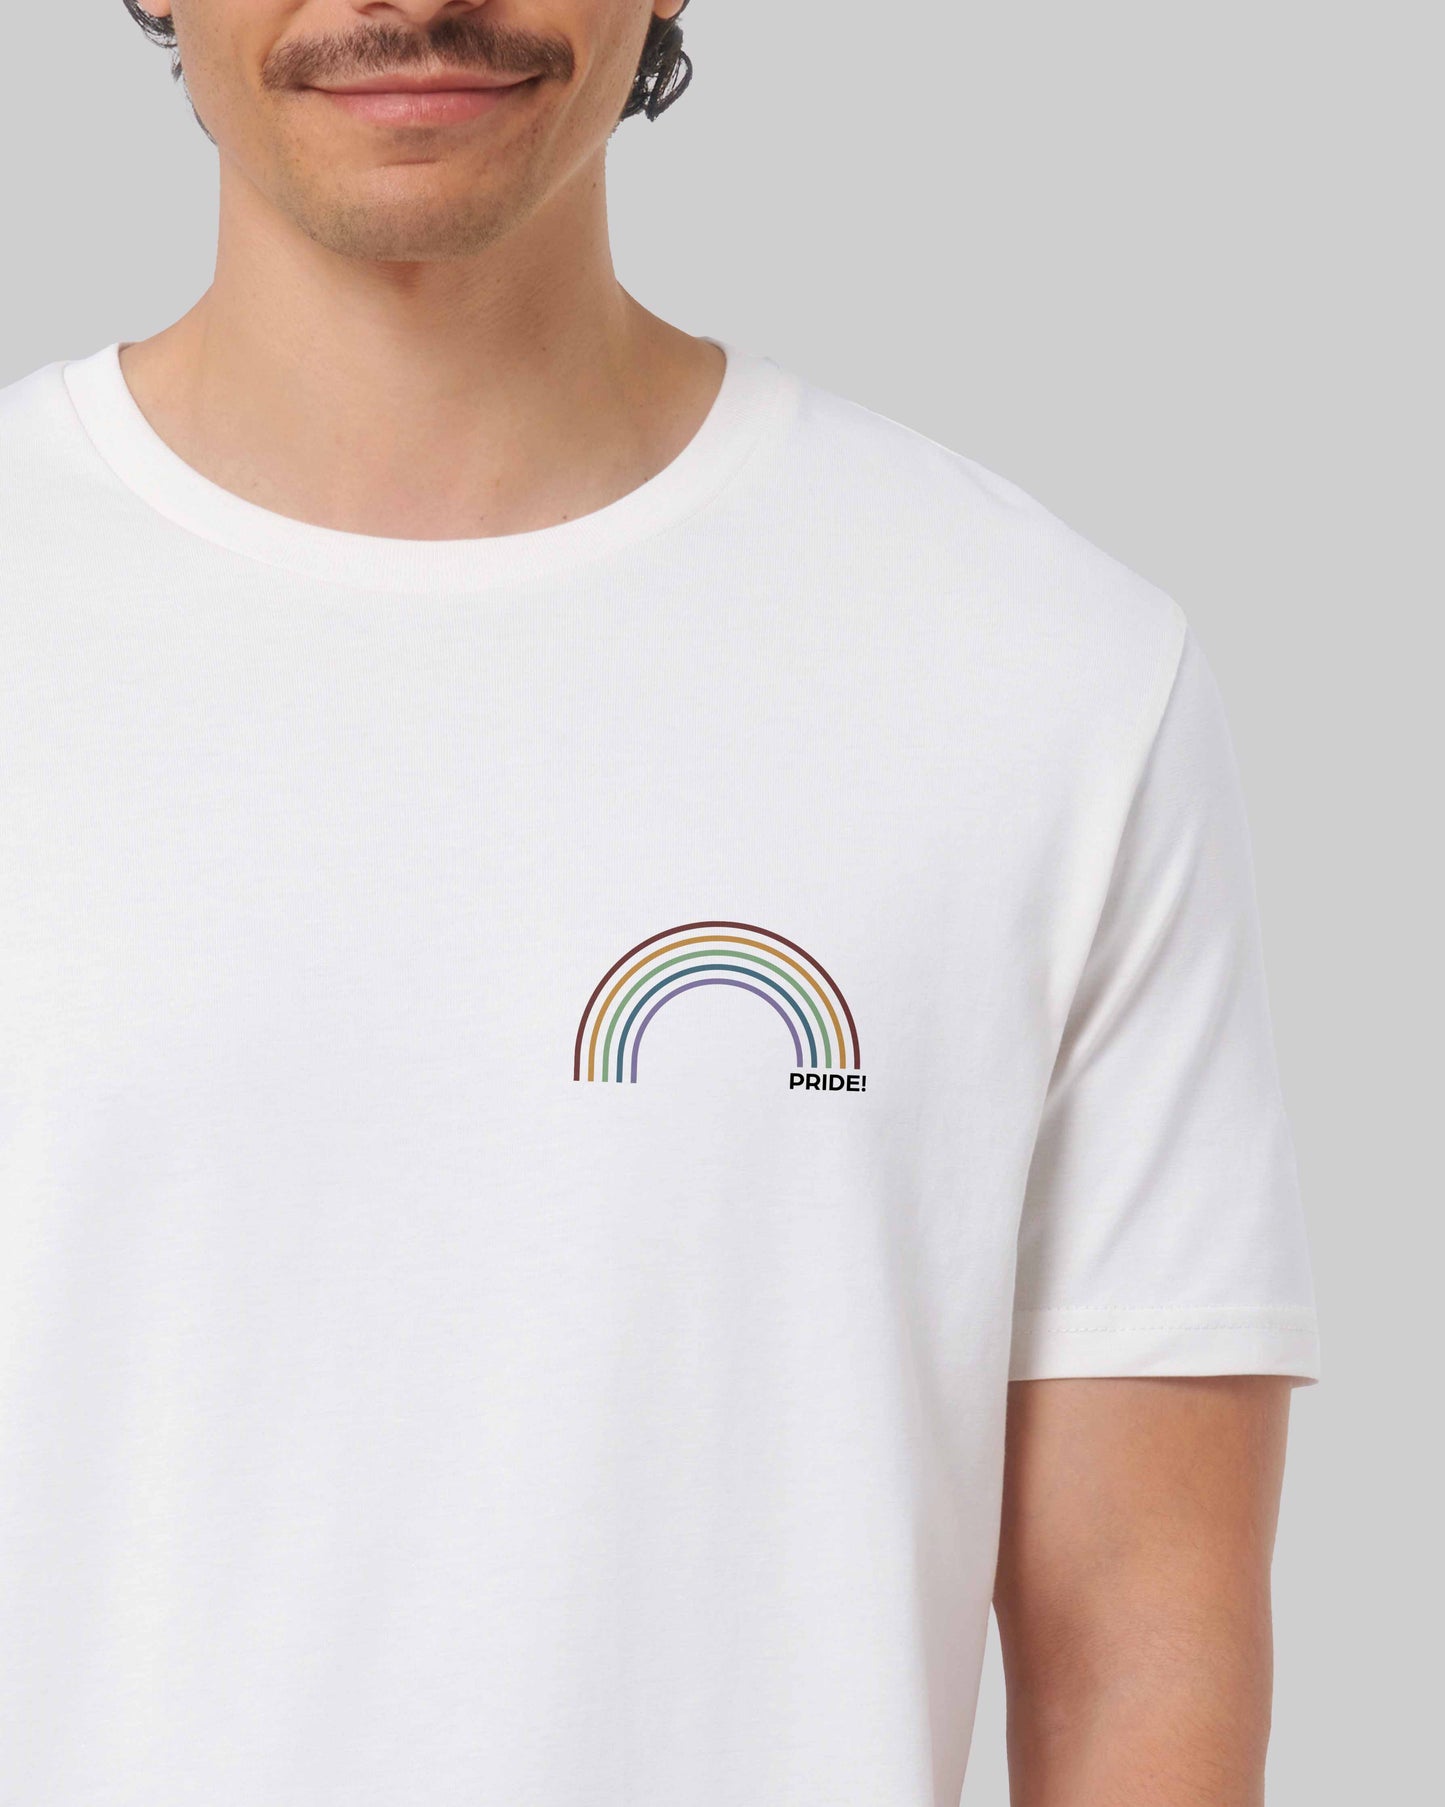 EINHORST® unisex Organic Shirt in Weiß mit dem Motiv "pride Regenbogen" in der Kombination bunter Regenbogen mit schwarzer Schrift, Bild von männlicher Person mit Shirt